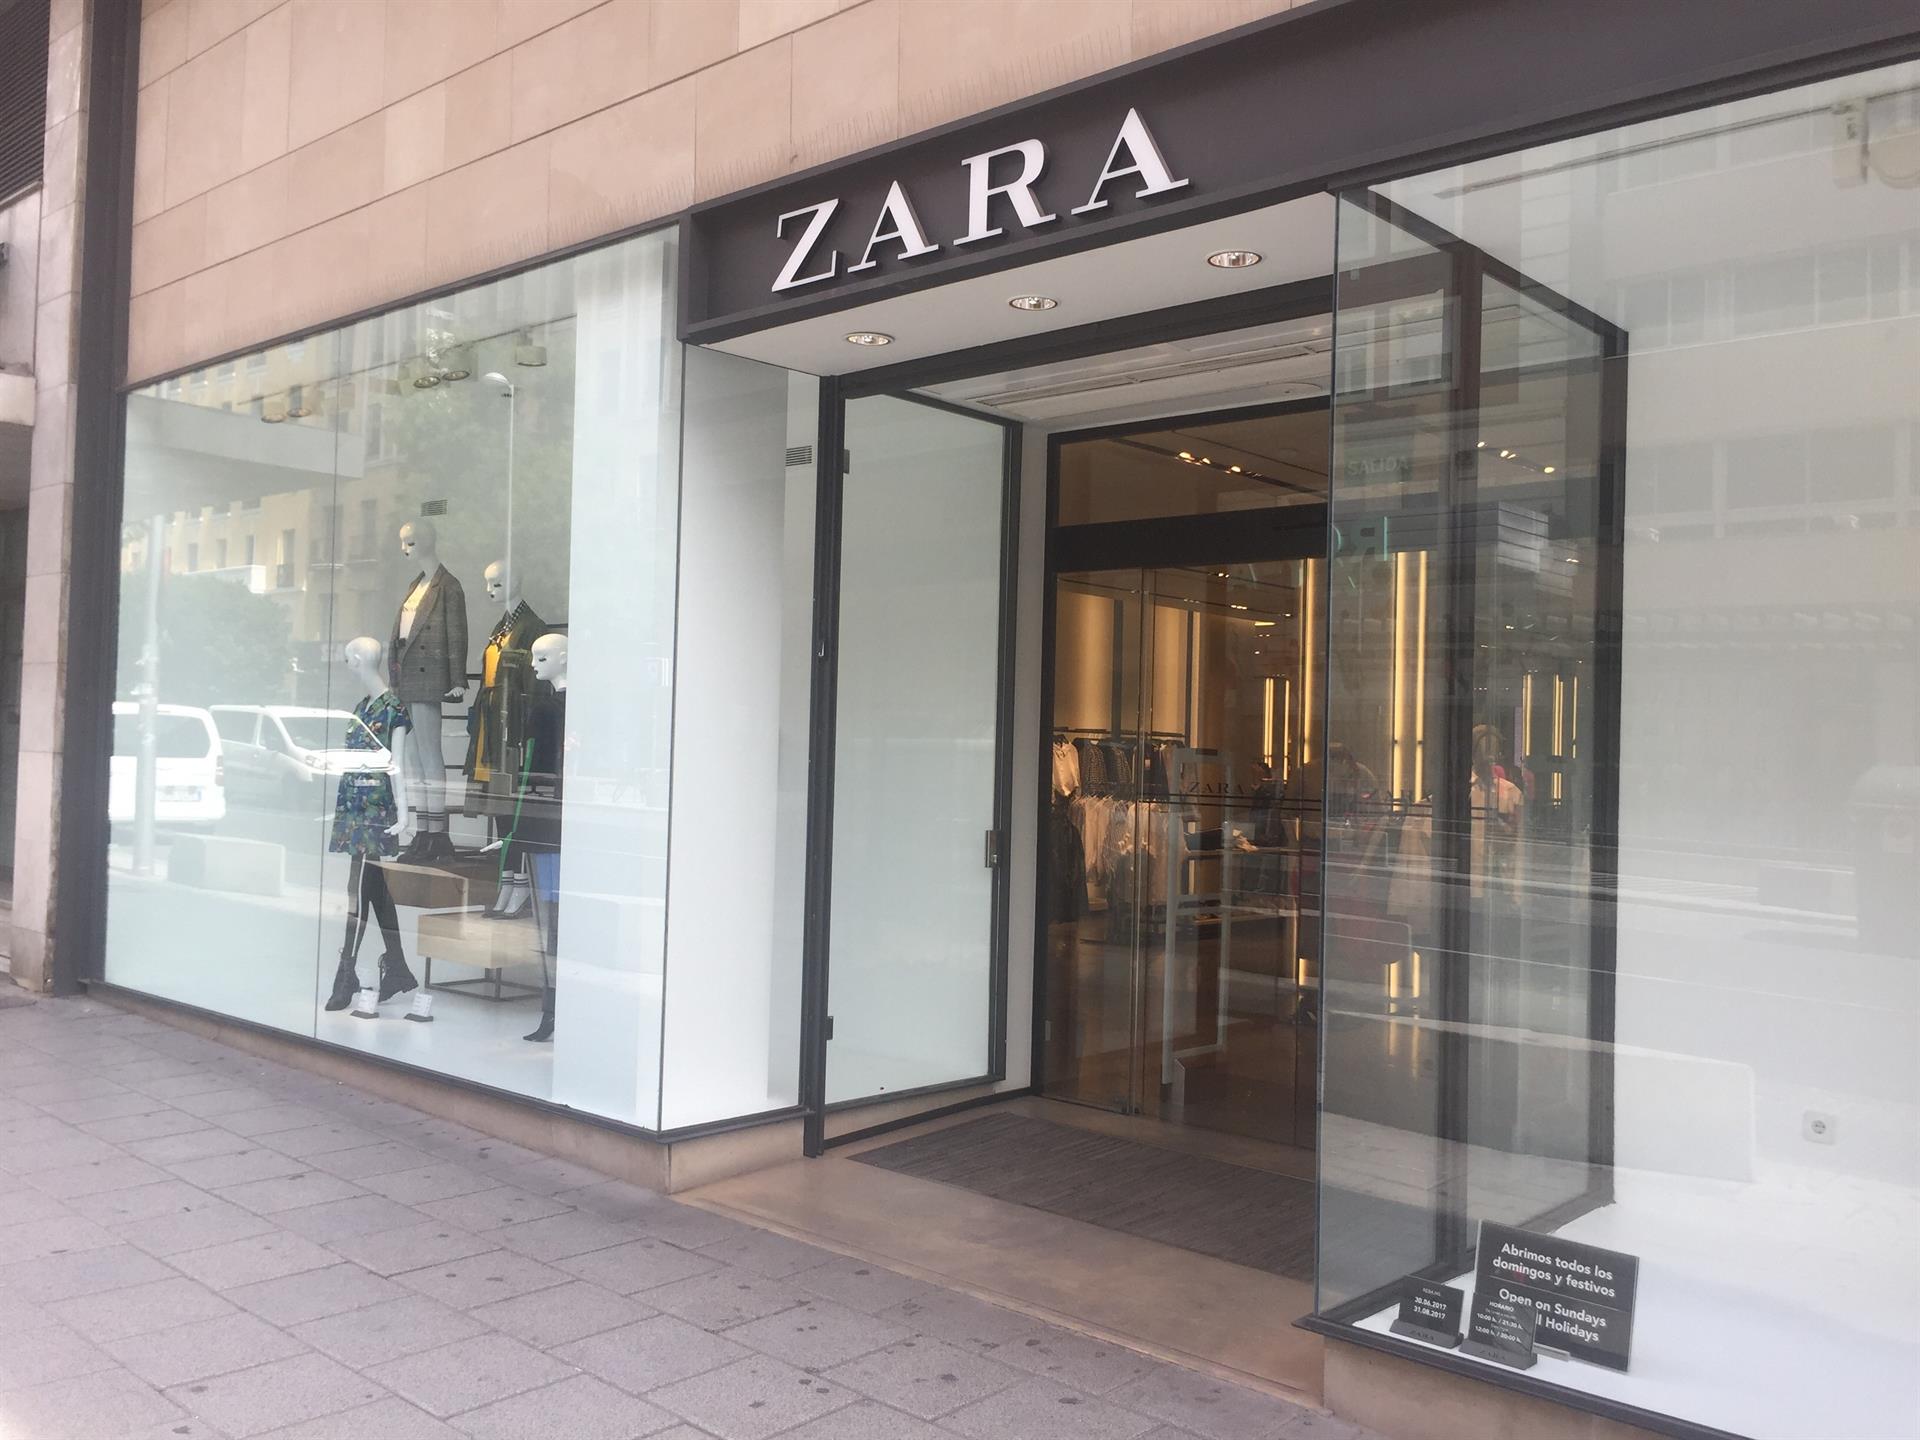 Las marcas deportivas están de moda: Zara se adapta al fenómeno  'athleisure' - Libre Mercado